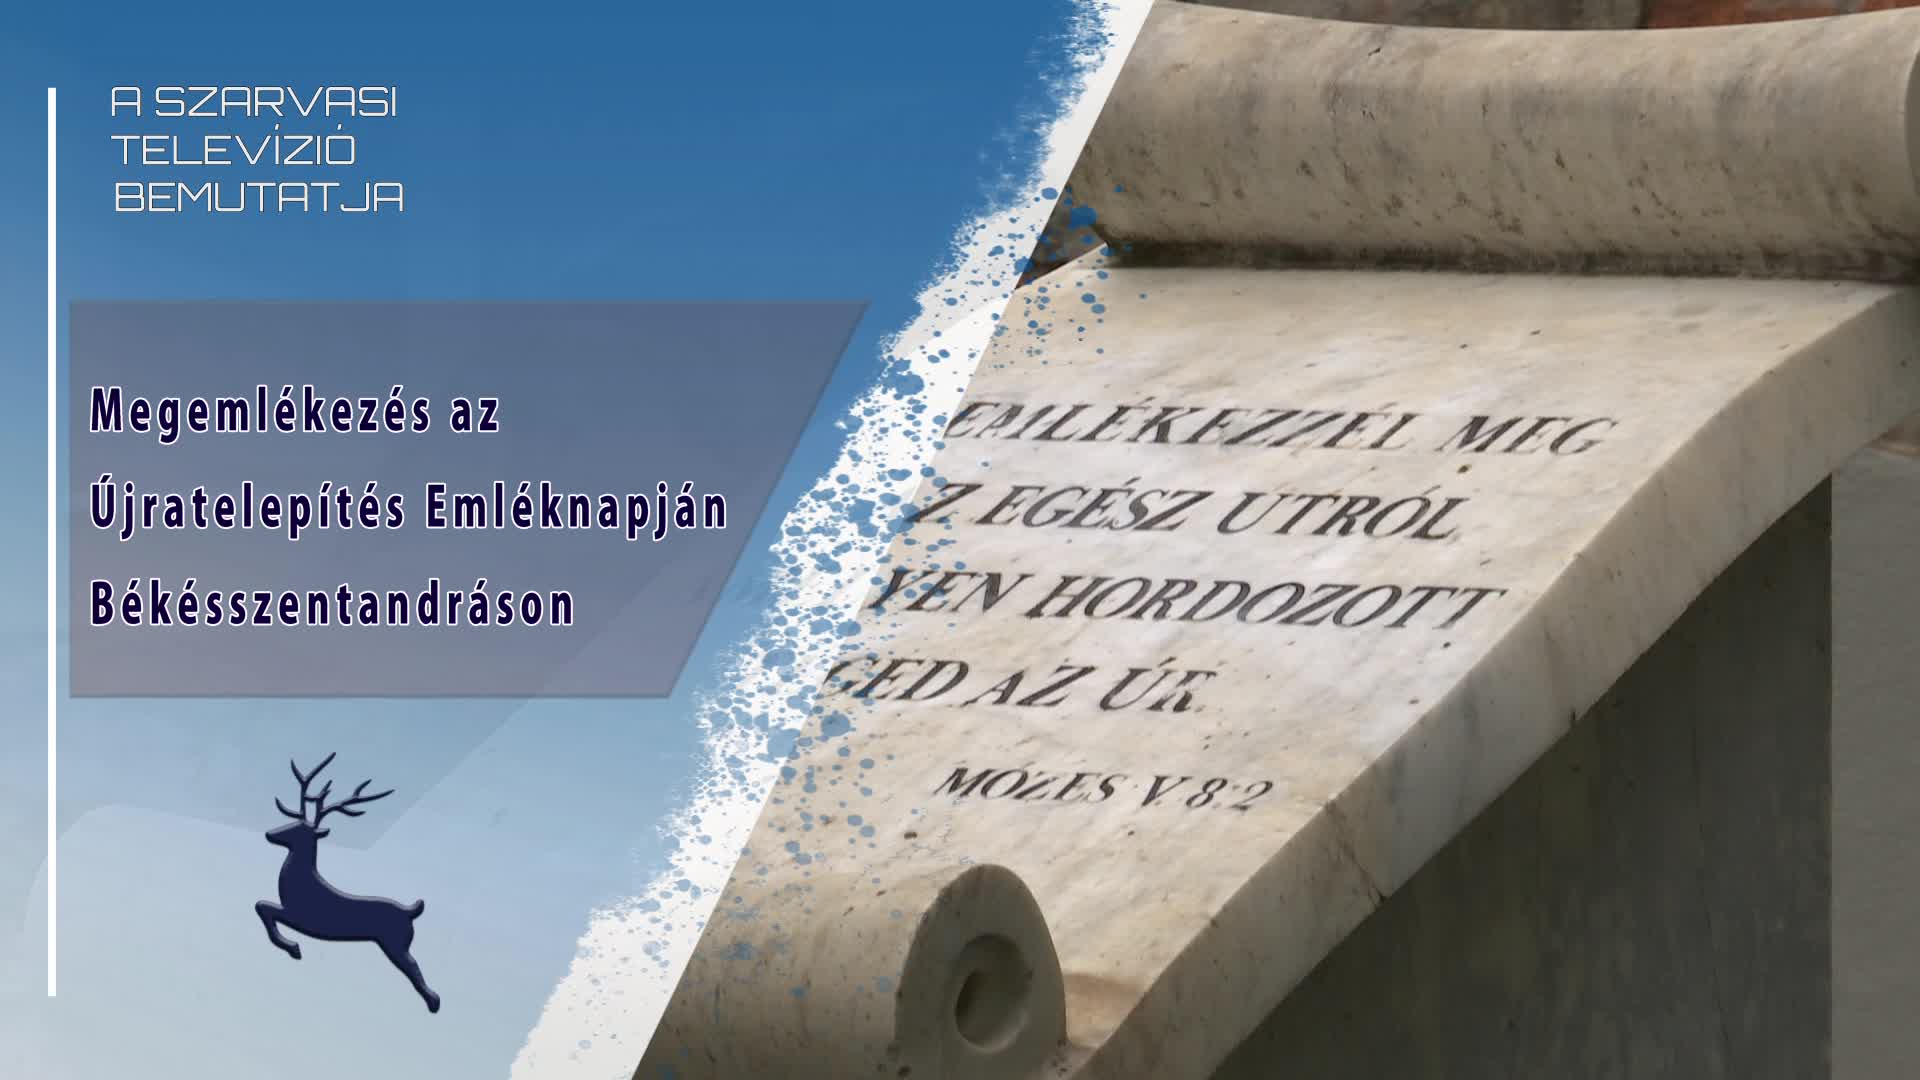 Megemlékezés az Újratelepítés Emléknapján Békésszentandráson (2022. 09. 16.)